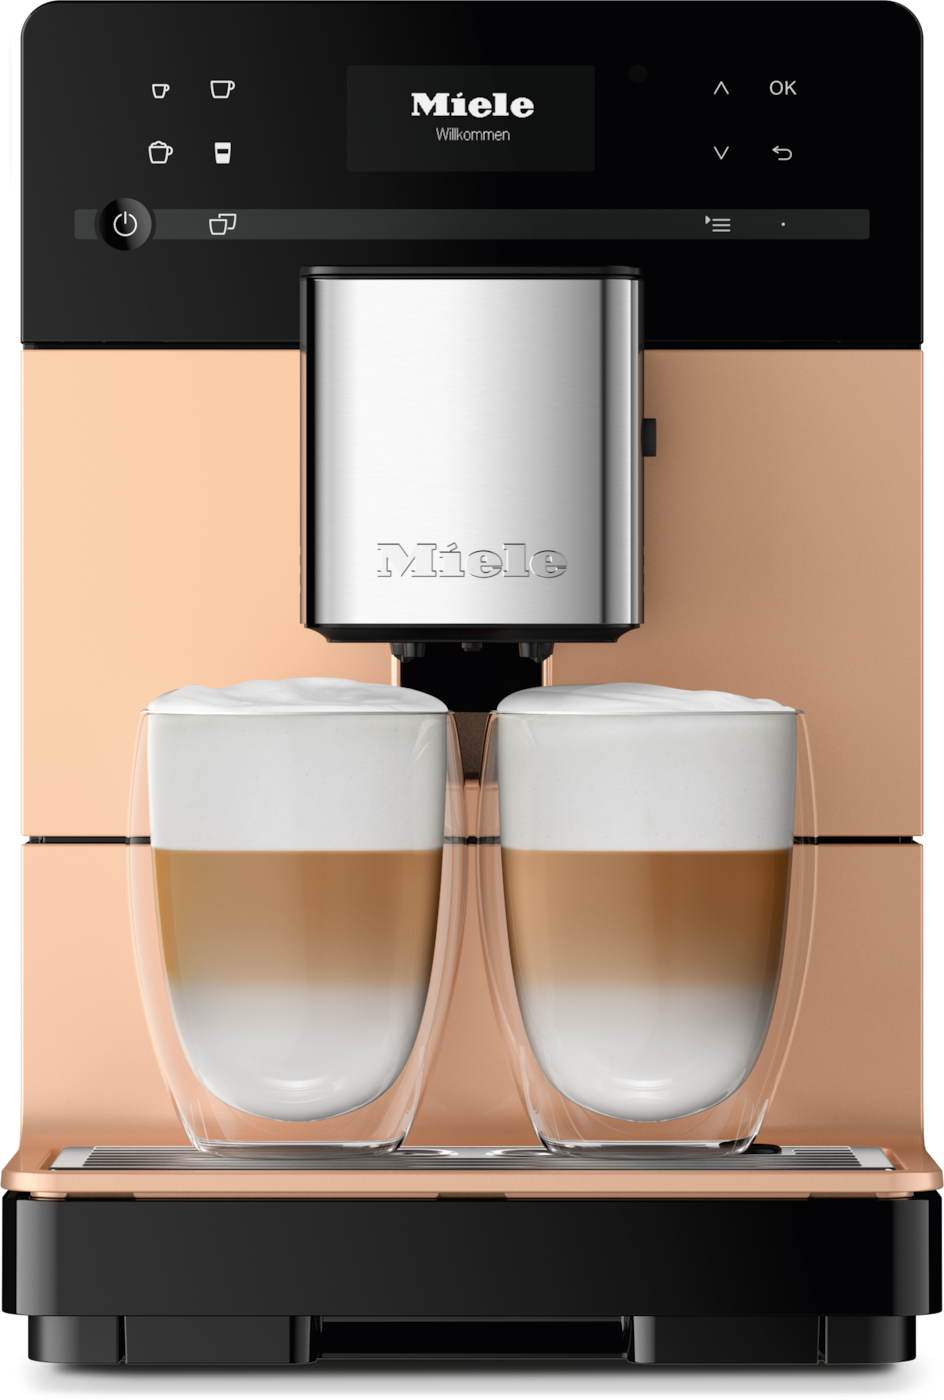 CM 5510 Silence - 座台式咖啡機 